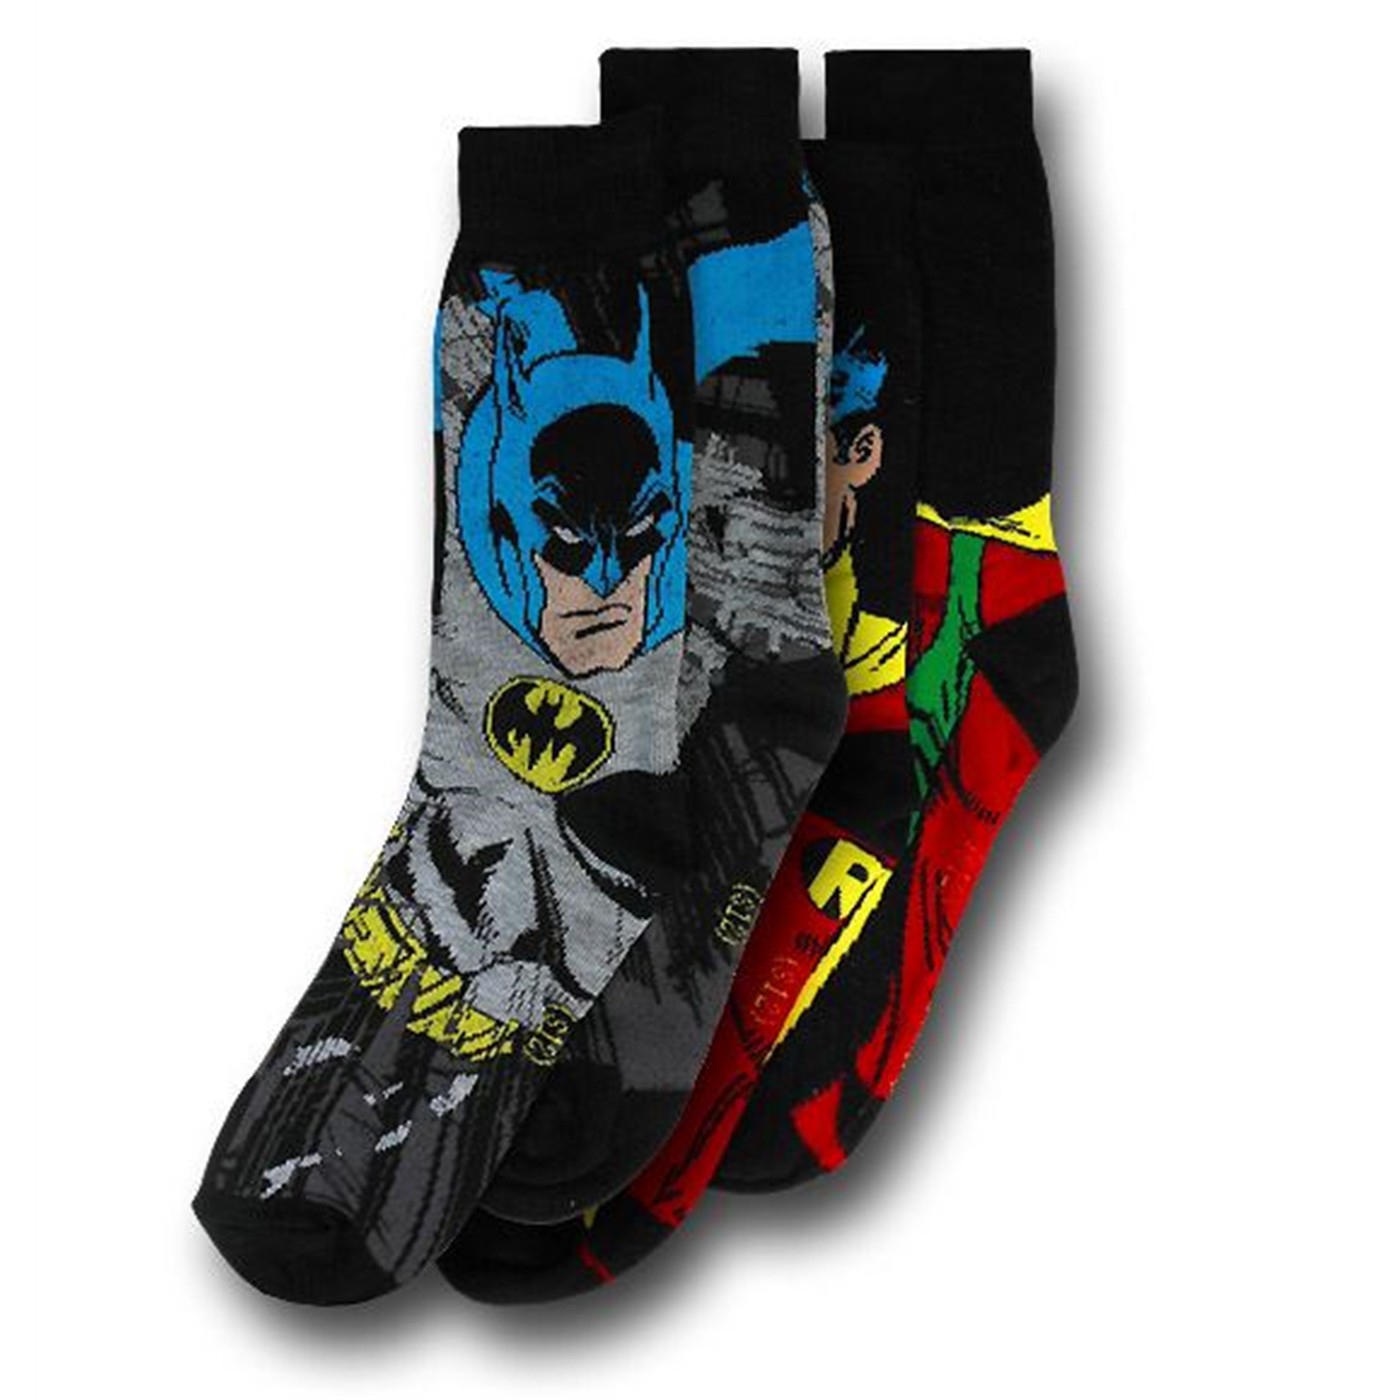 Batman and Robin Socks 2-Pack